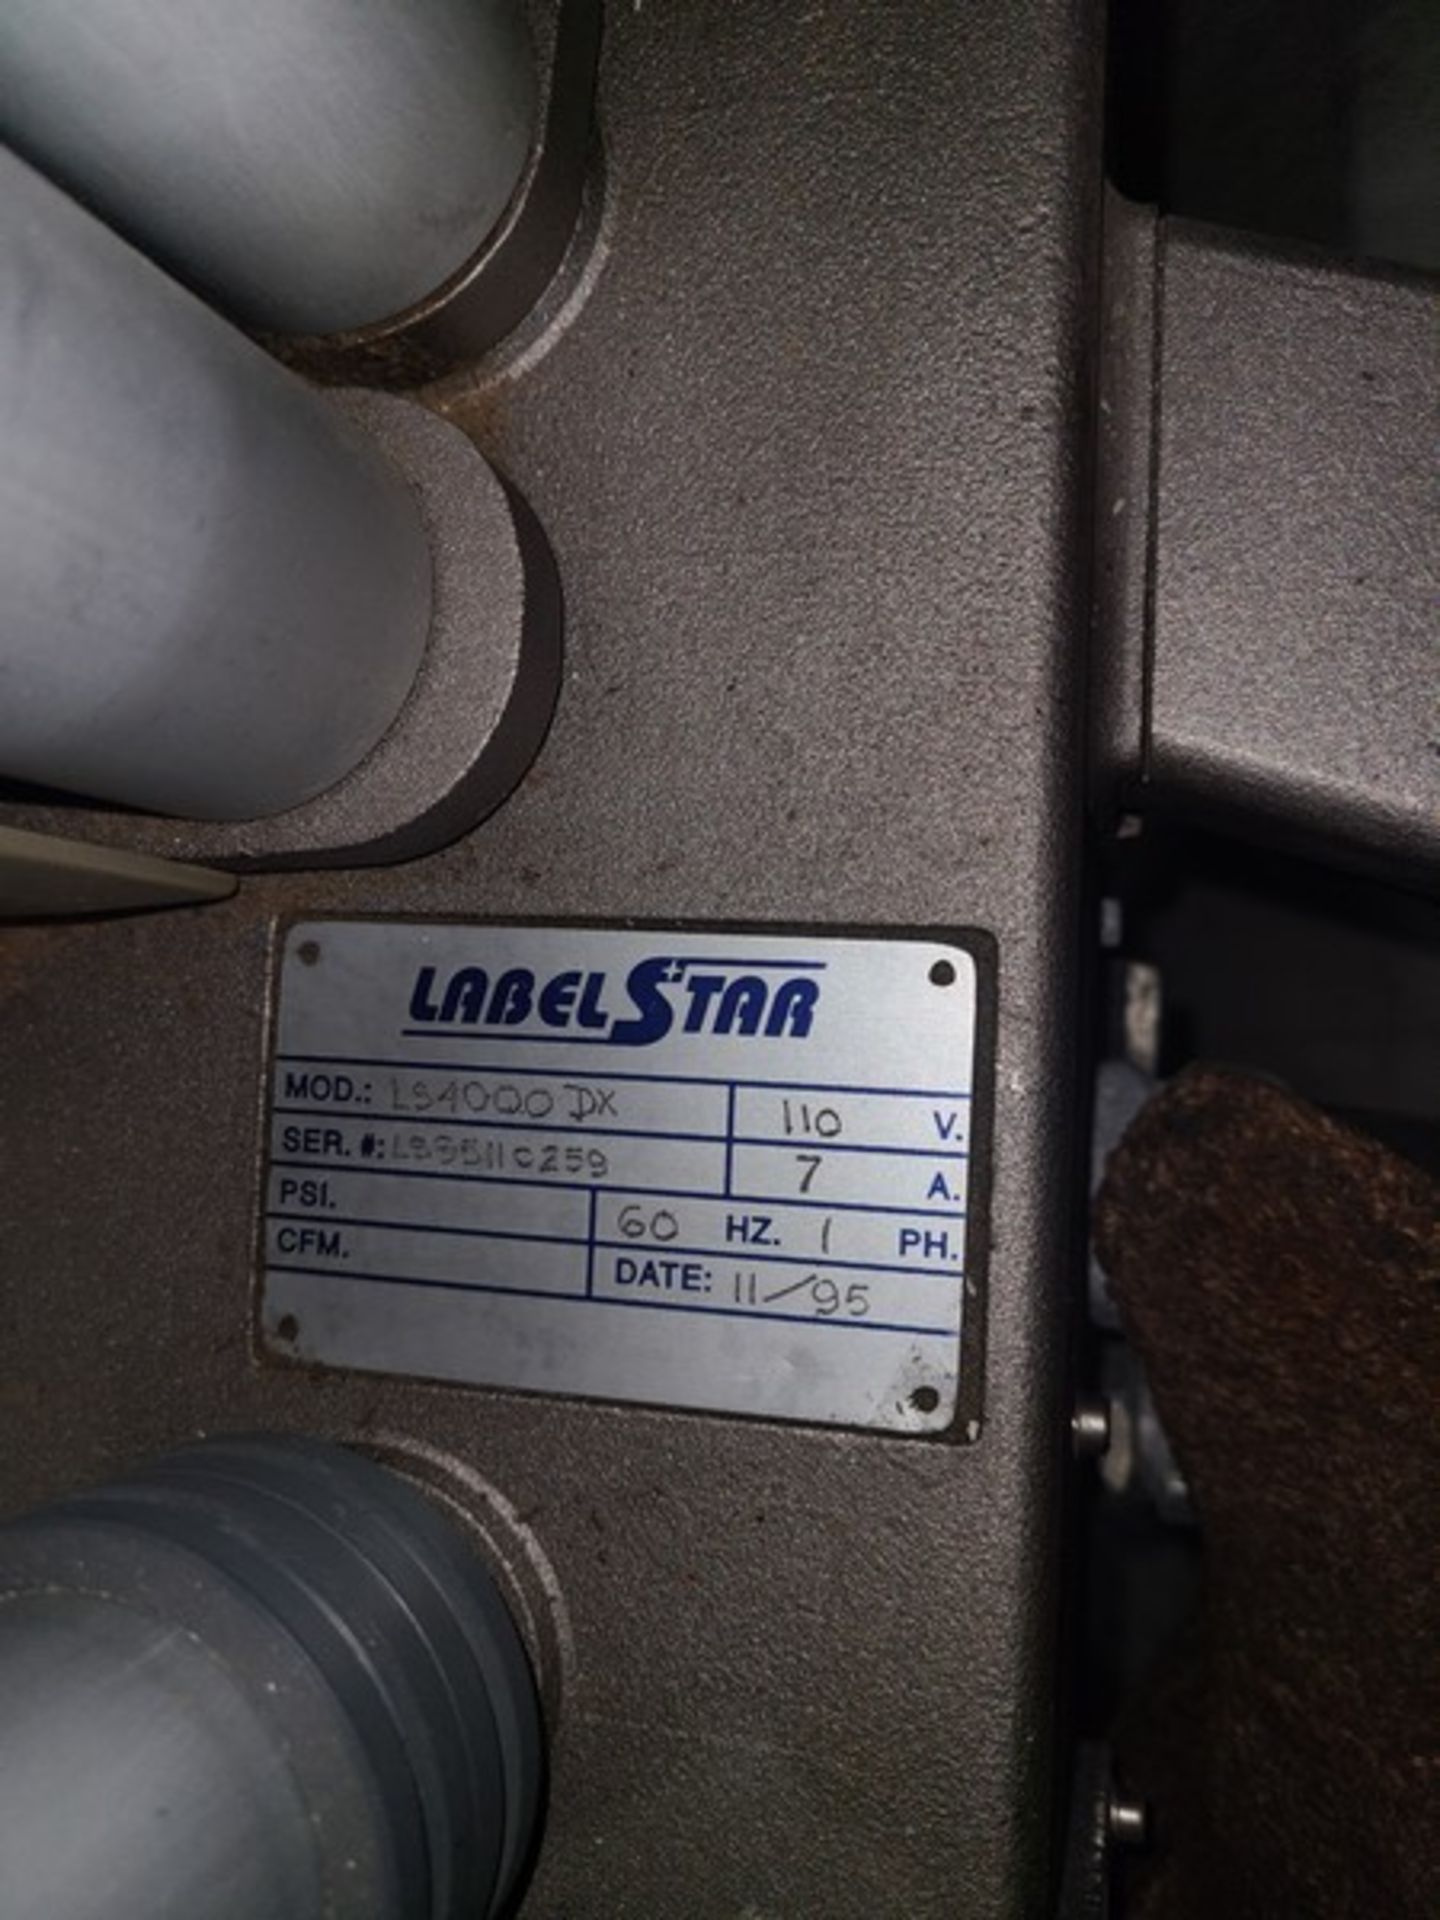 Kalish Labelstar Label Head, Model LS4000DX, S/N LS95110259, 110 V, 60 Hz, Single Phase - Image 7 of 7